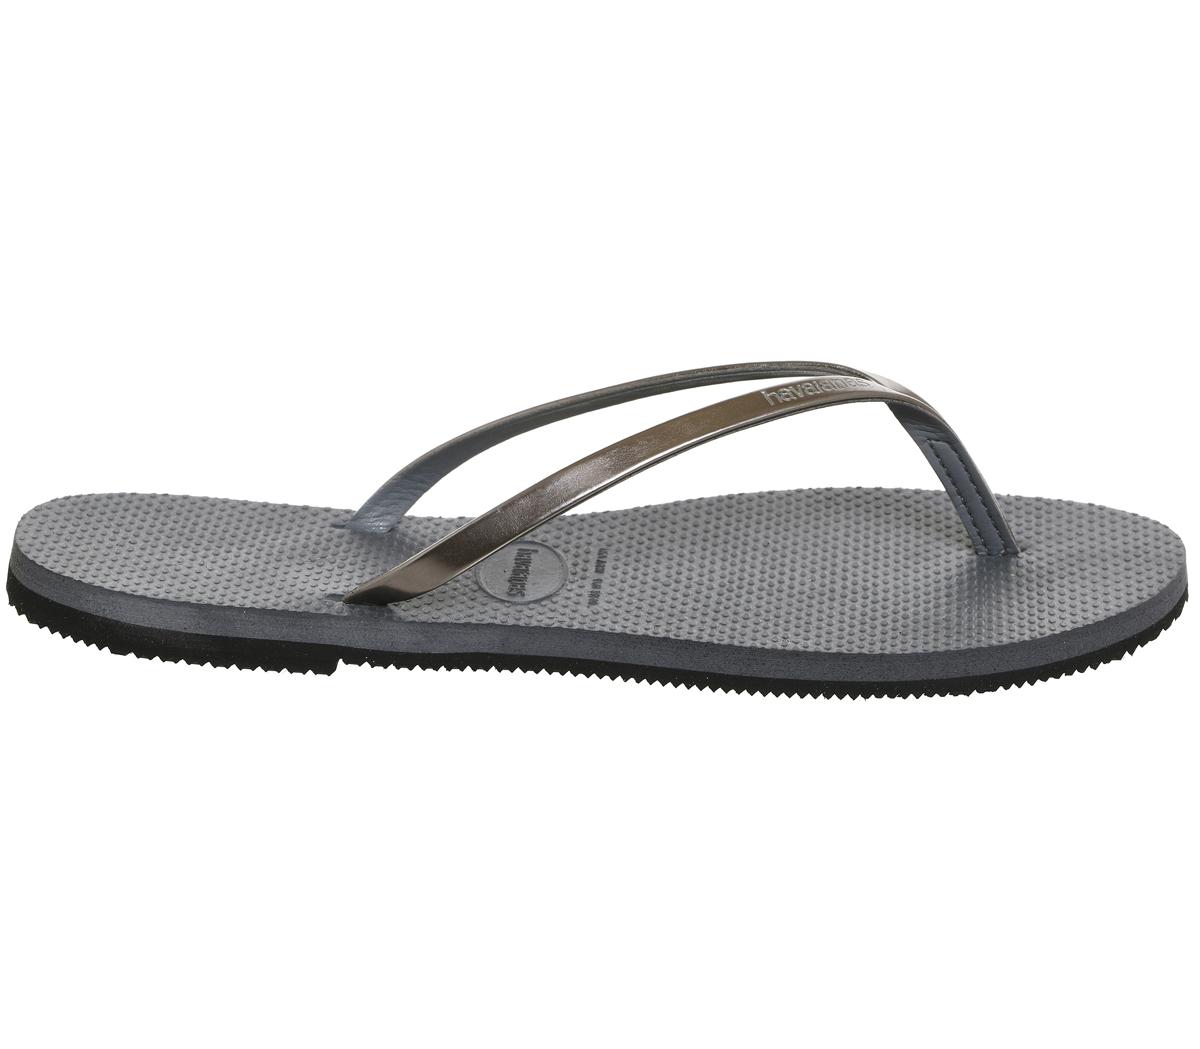 Havaianas Slim You Metallic Flip Flops Steel Grey - Sandals